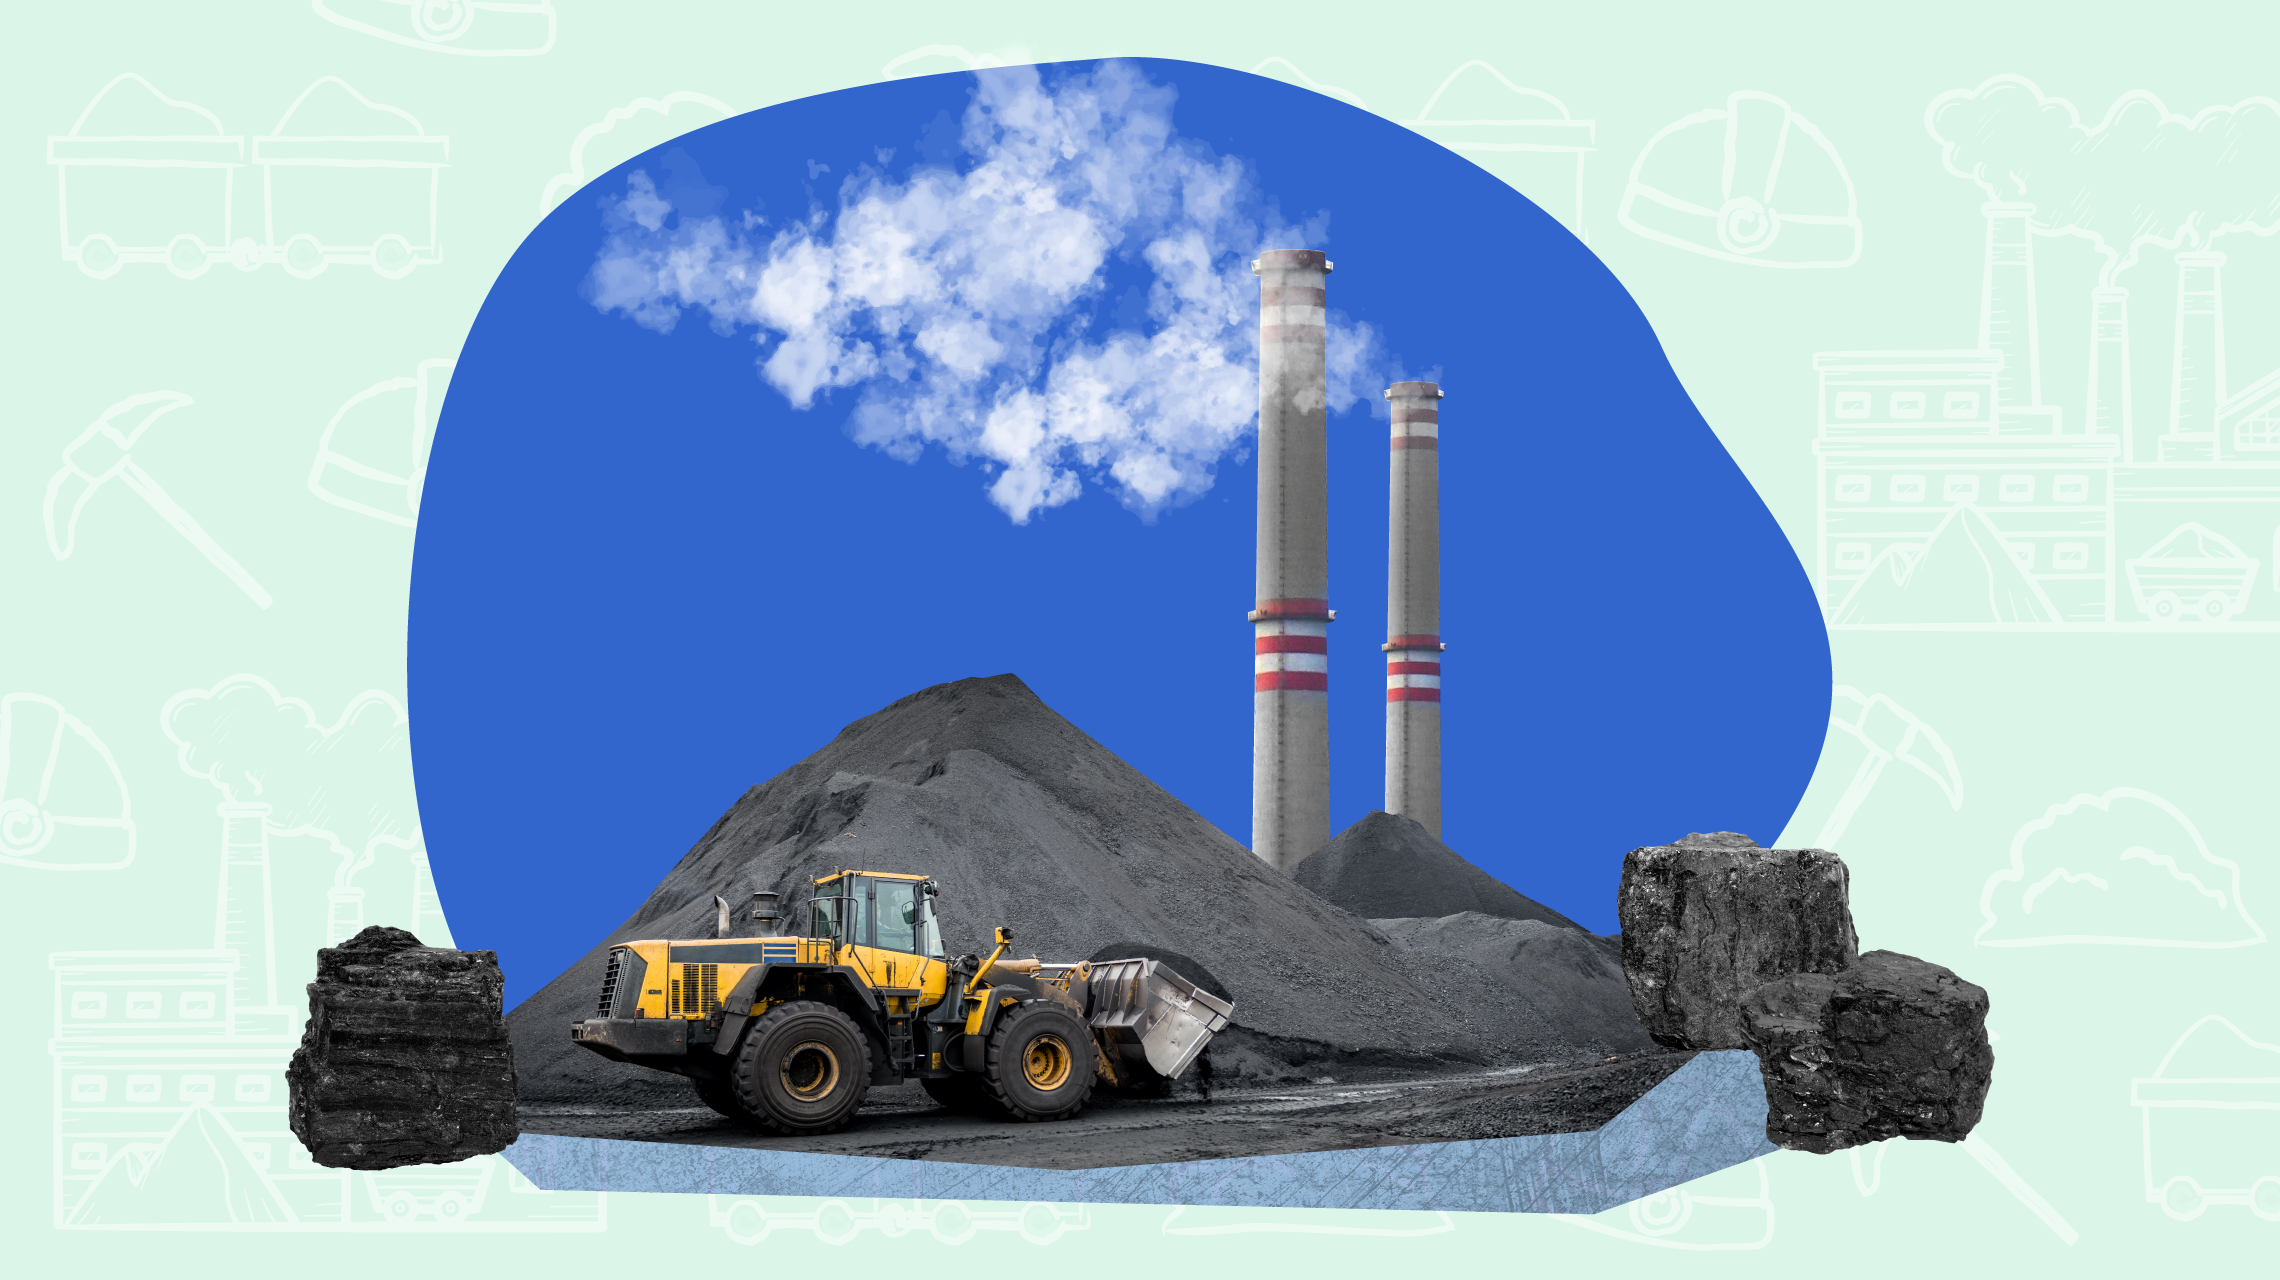 coal energy